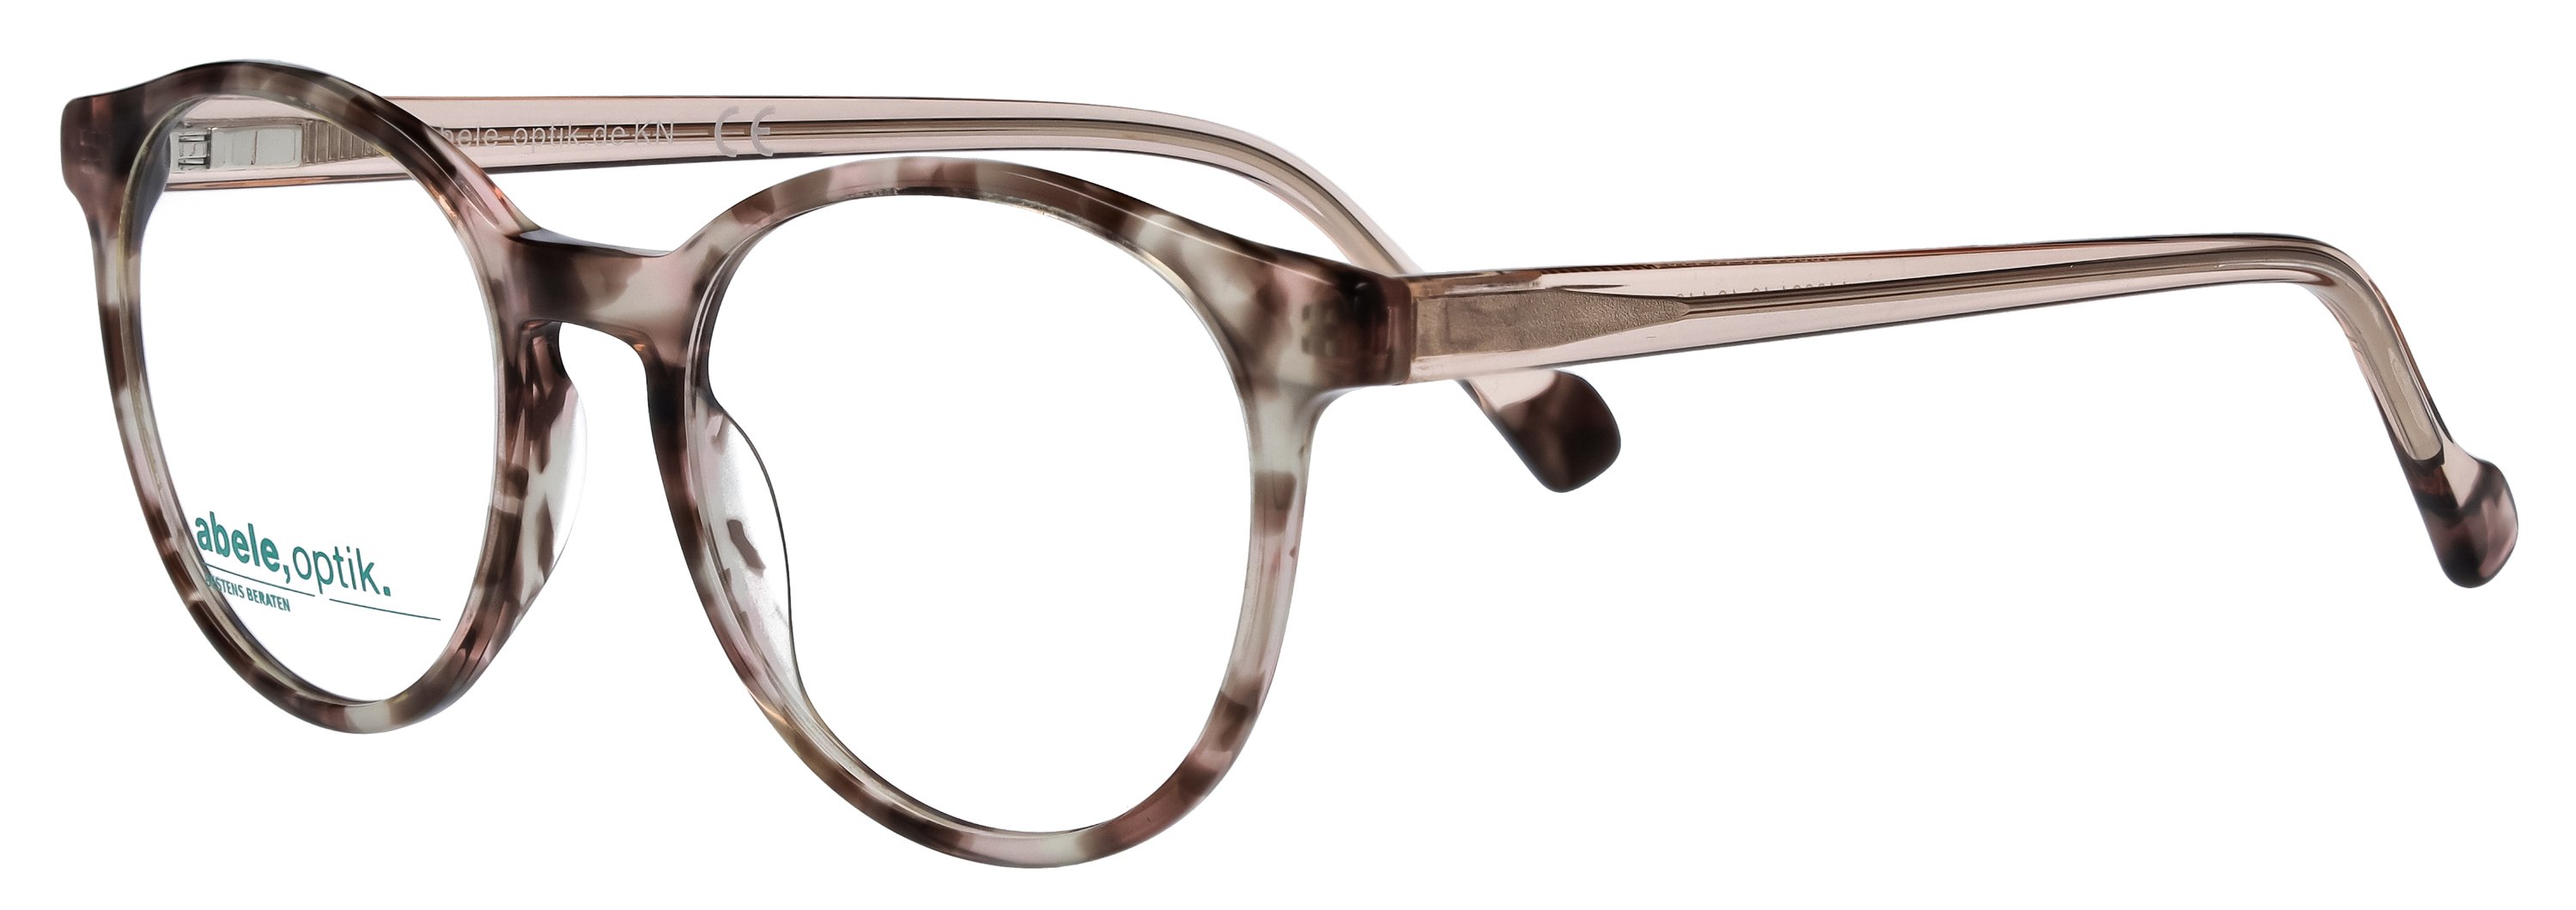 Das Bild zeigt die Korrektionsbrille 148821 von der Marke Abele Optik in  rosa braun havana.